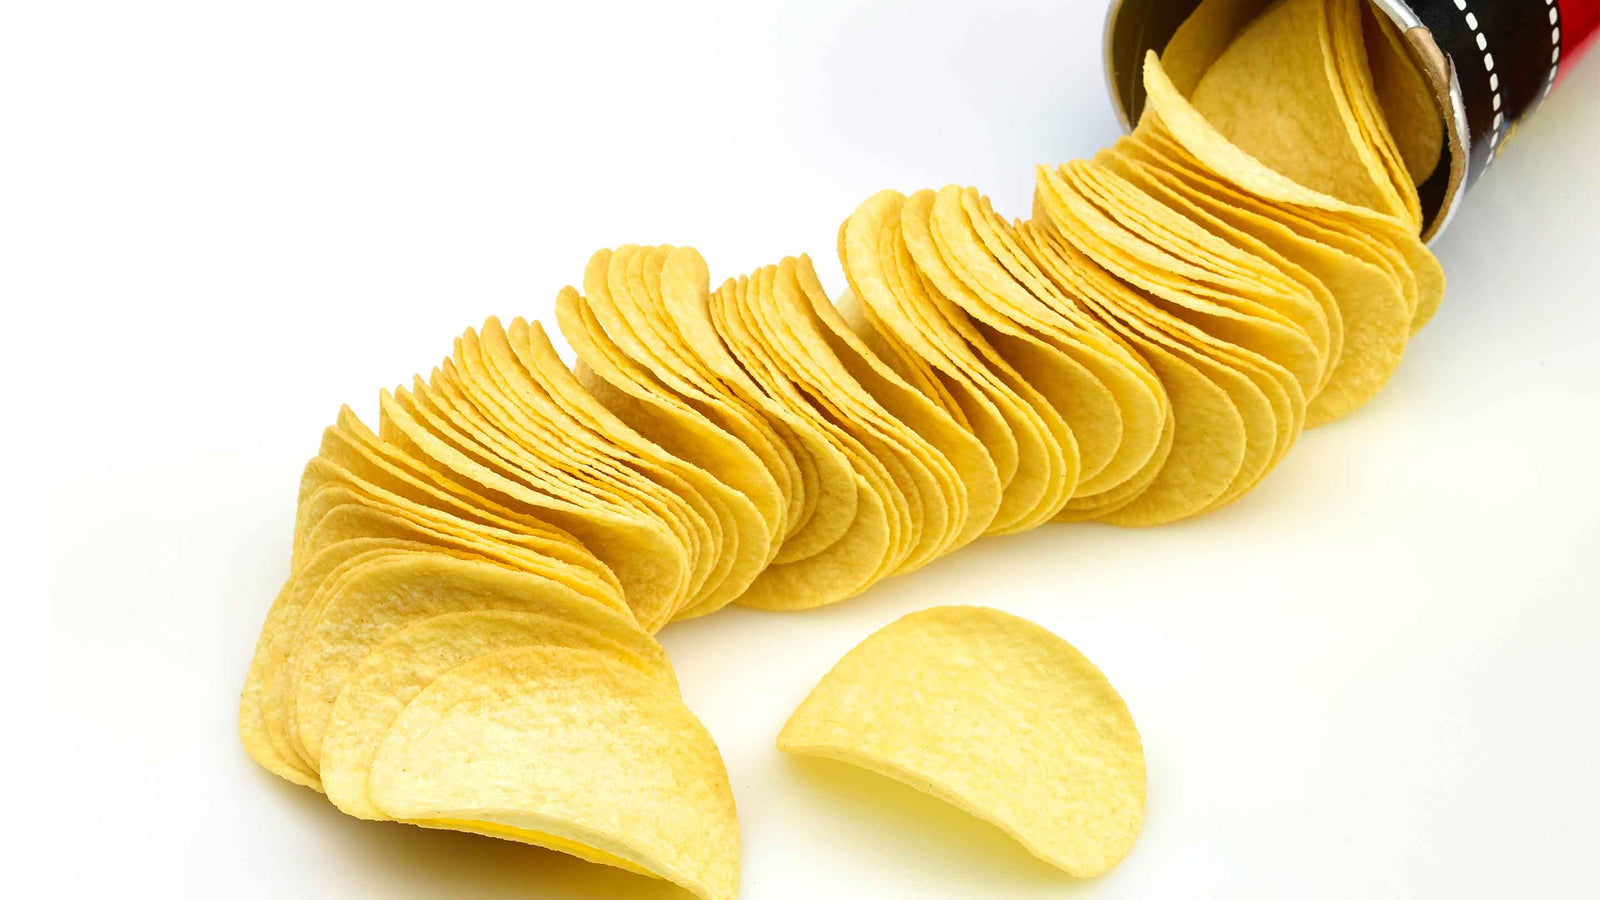 Tube of Pringles crisps